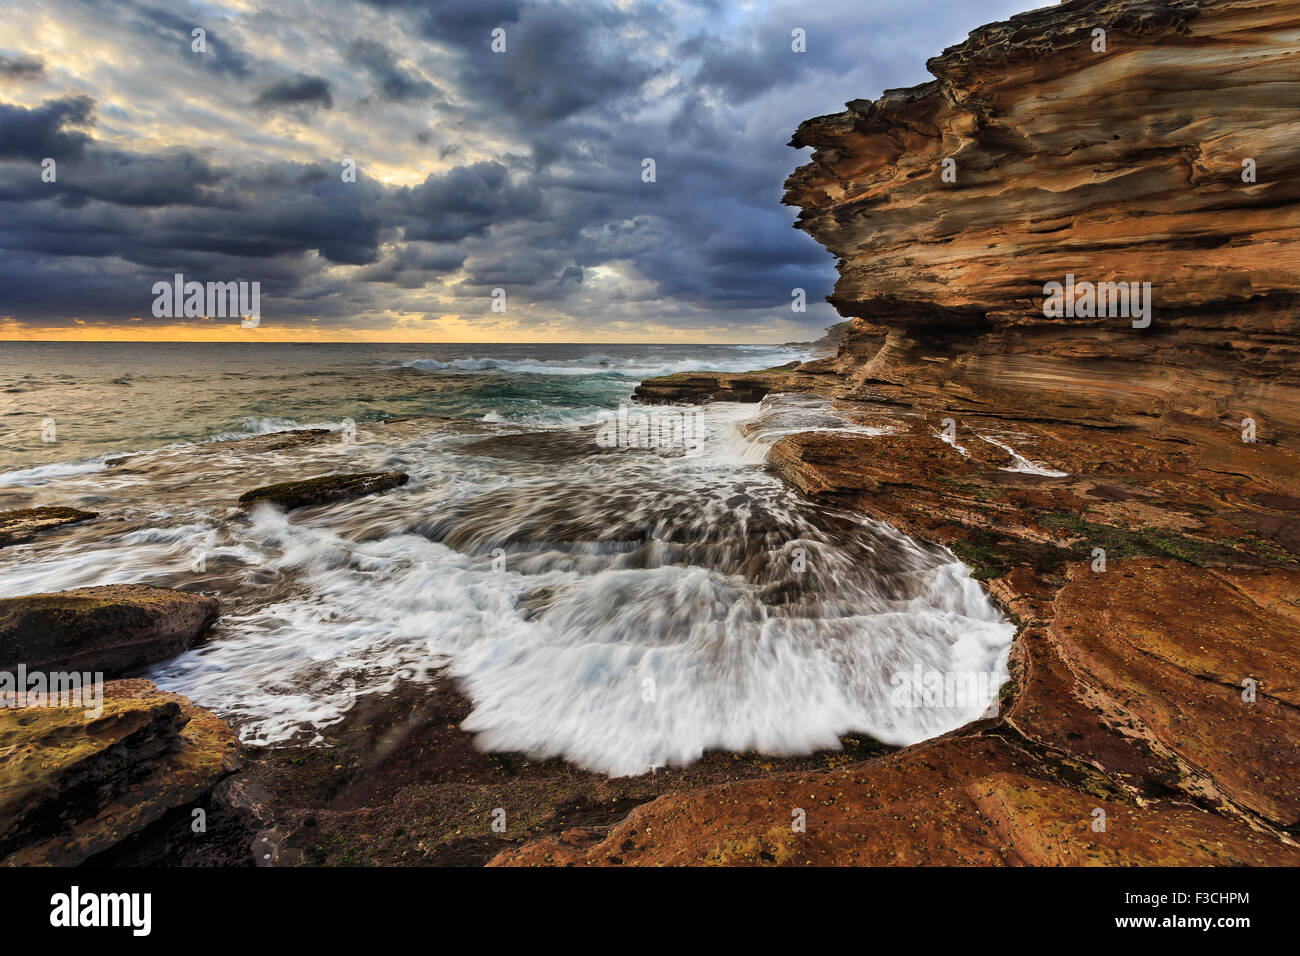 rugged coast of Australia nea Sydney at sunrise. Stormy wavers eroding sandstone rocks. Stock Photo